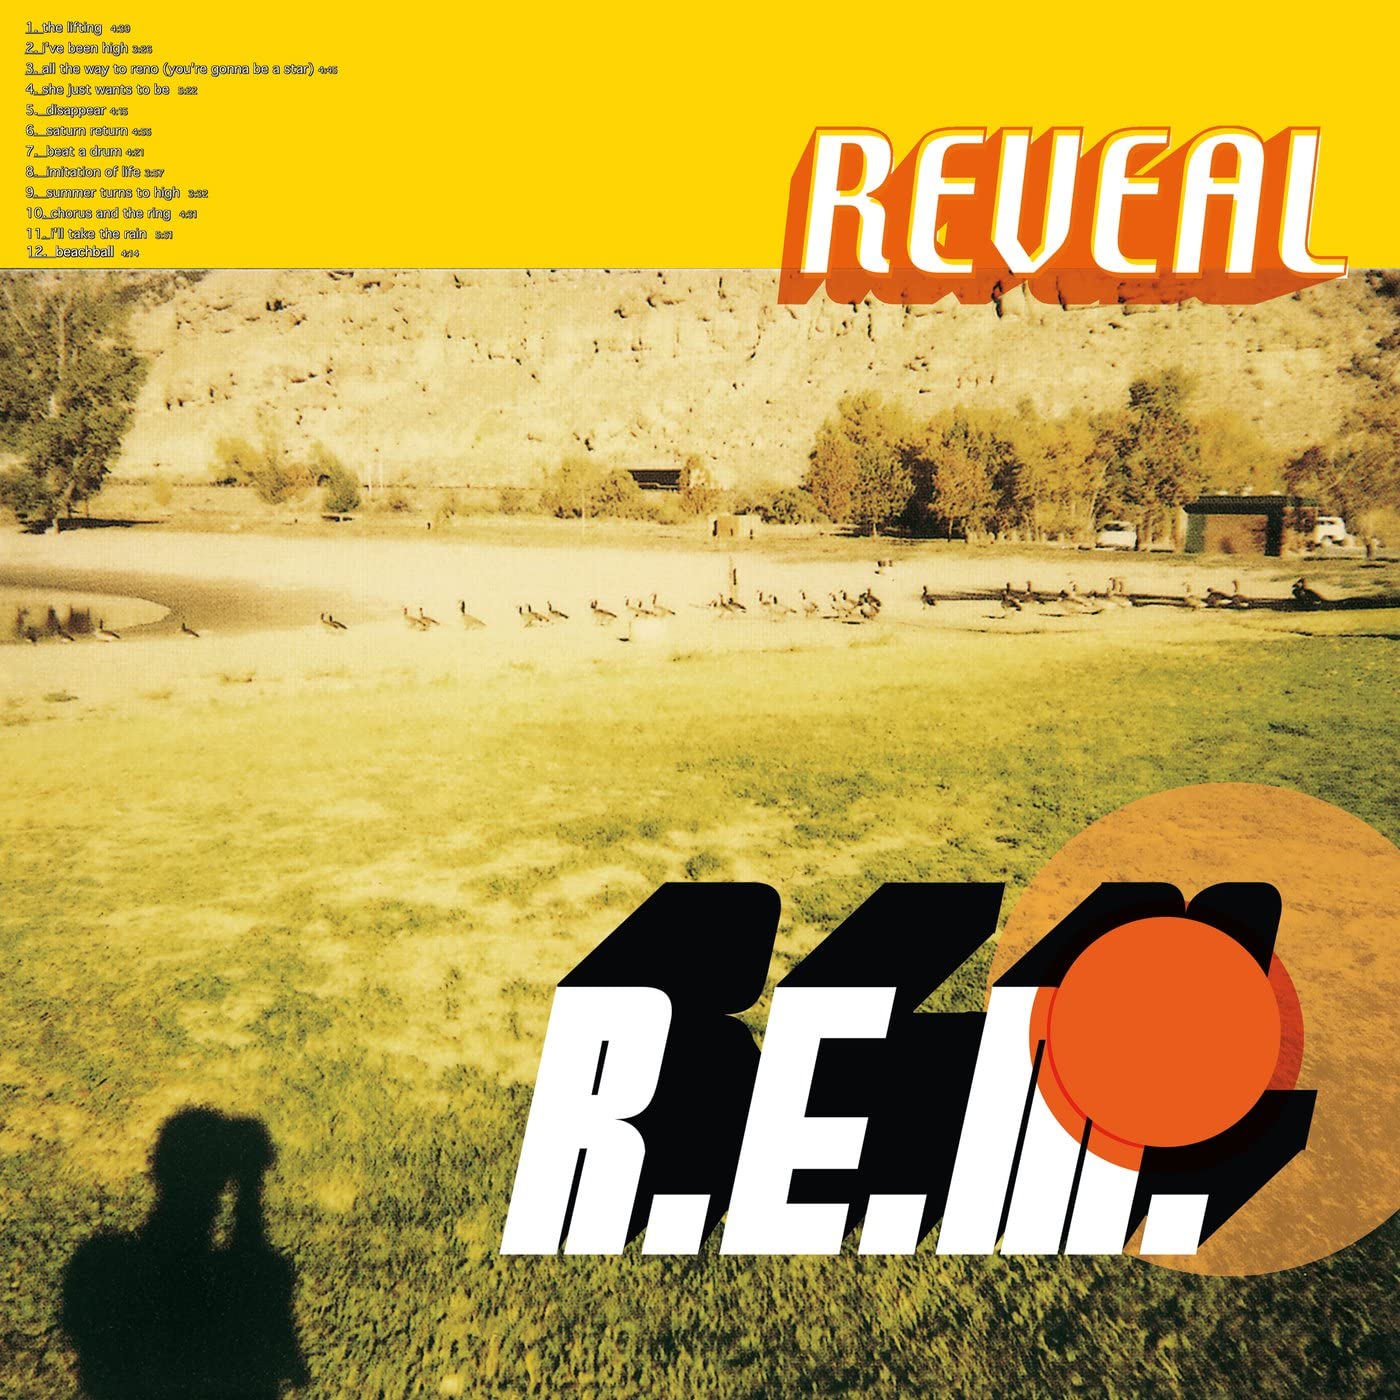 Reveal | R.E.M.